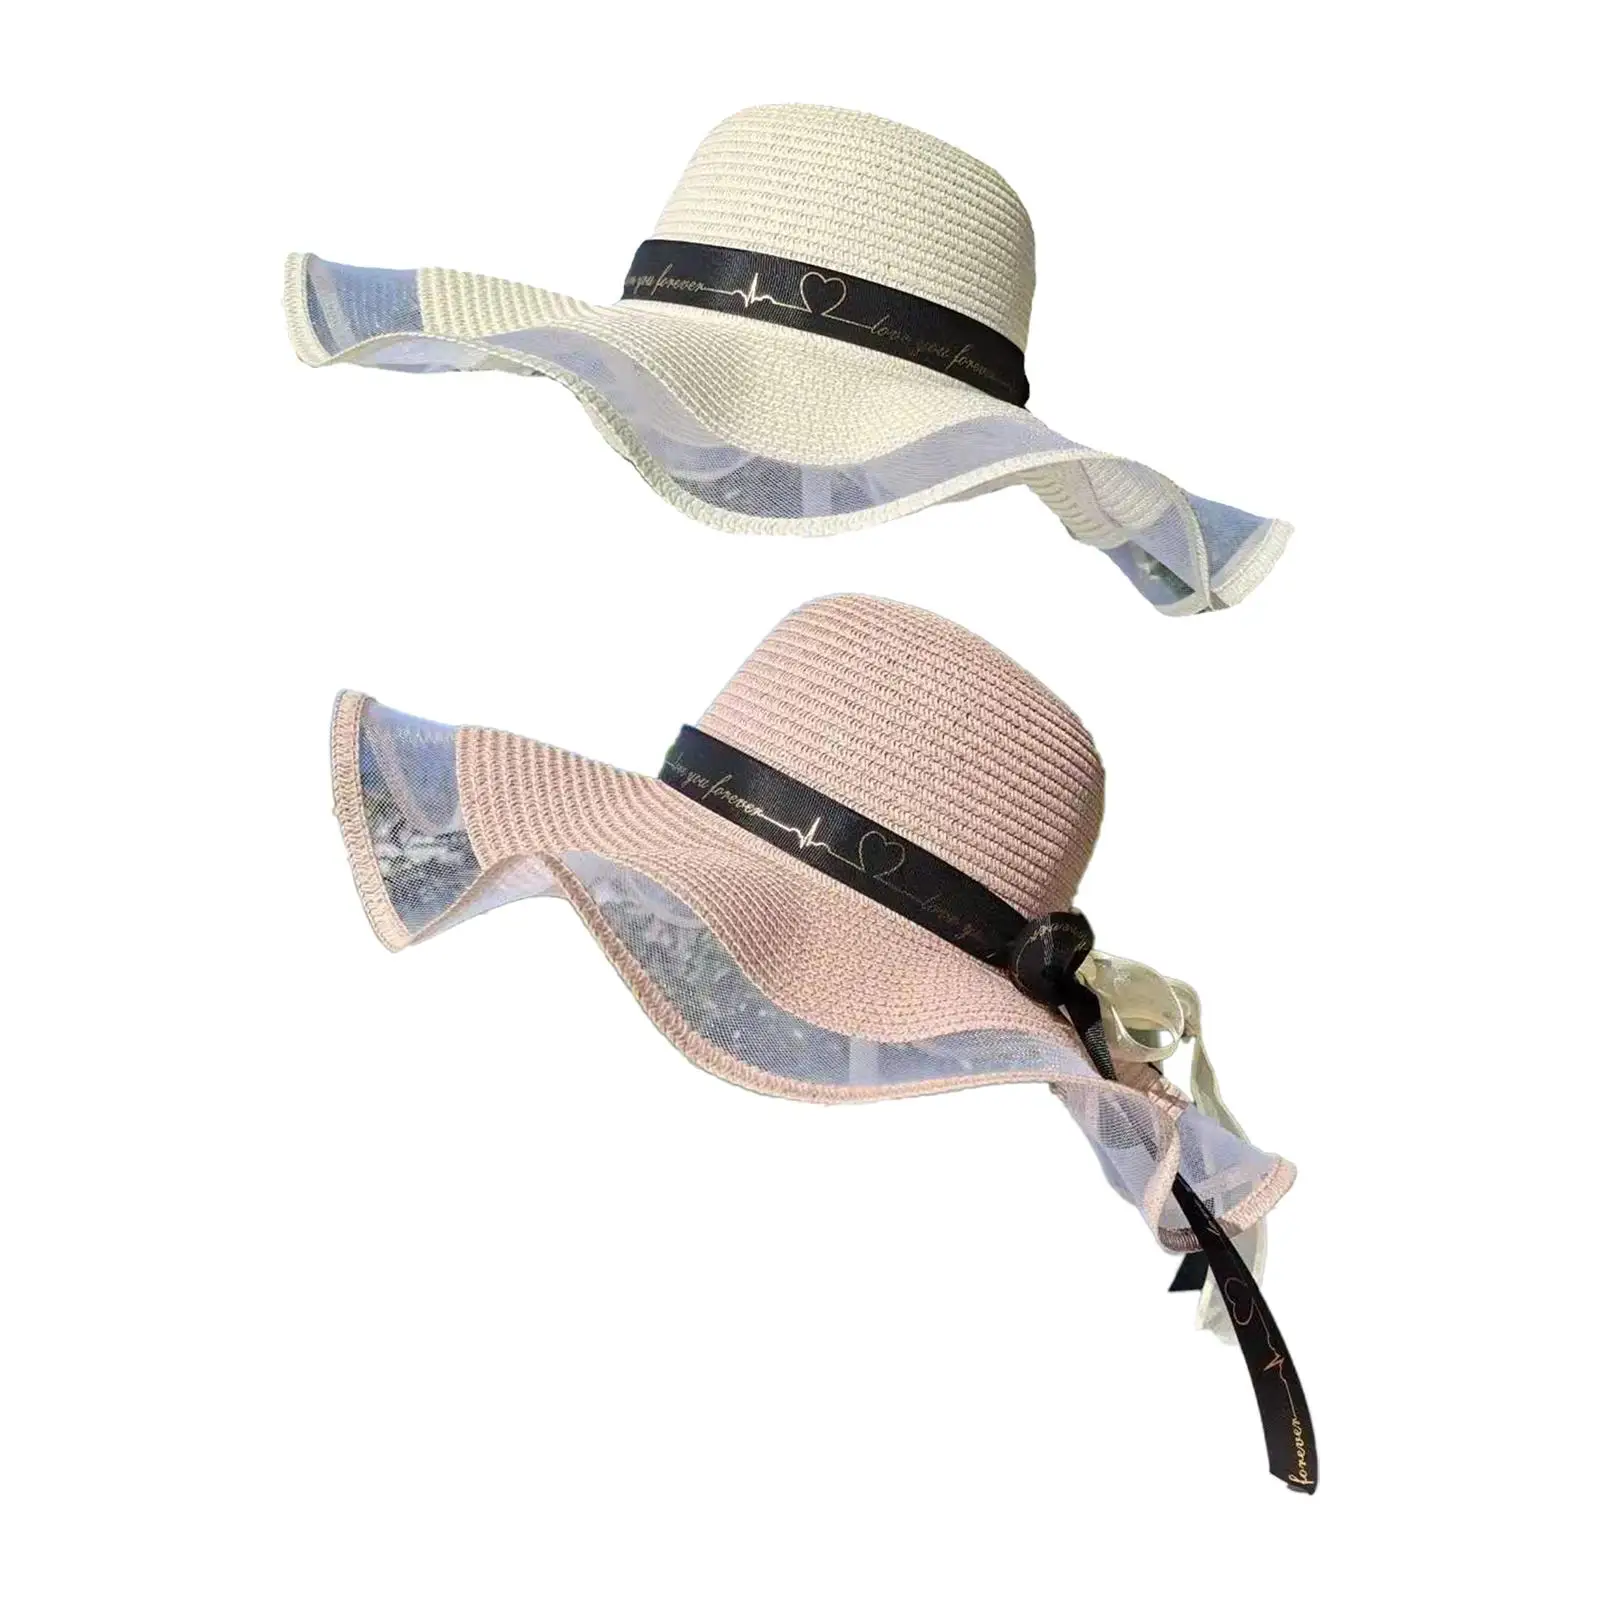 

Шляпа женская Соломенная с широкими полями, головной убор от солнца, для пляжа, отдыха на открытом воздухе, путешествий, легкая